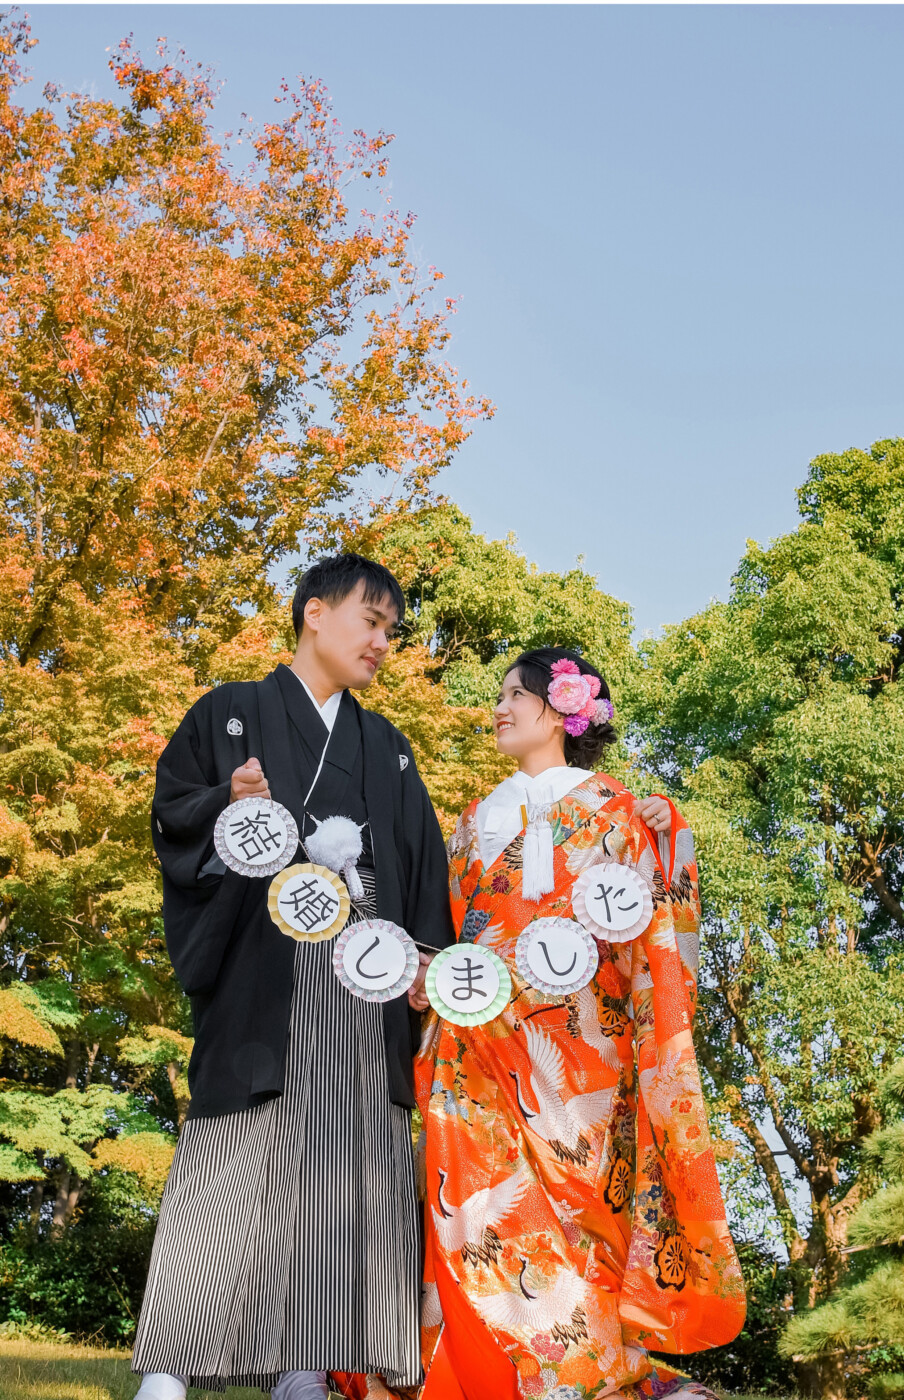 Tỉ mỉ chuẩn bị từng chi tiết, các cặp đôi tìm tới phong cách cưới Nhật Bản để tạo nên bộ ảnh cưới tuyệt vời. Xem ngay hình ảnh cưới Nhật Bản để cảm nhận sự tinh tế và ấn tượng của họ.